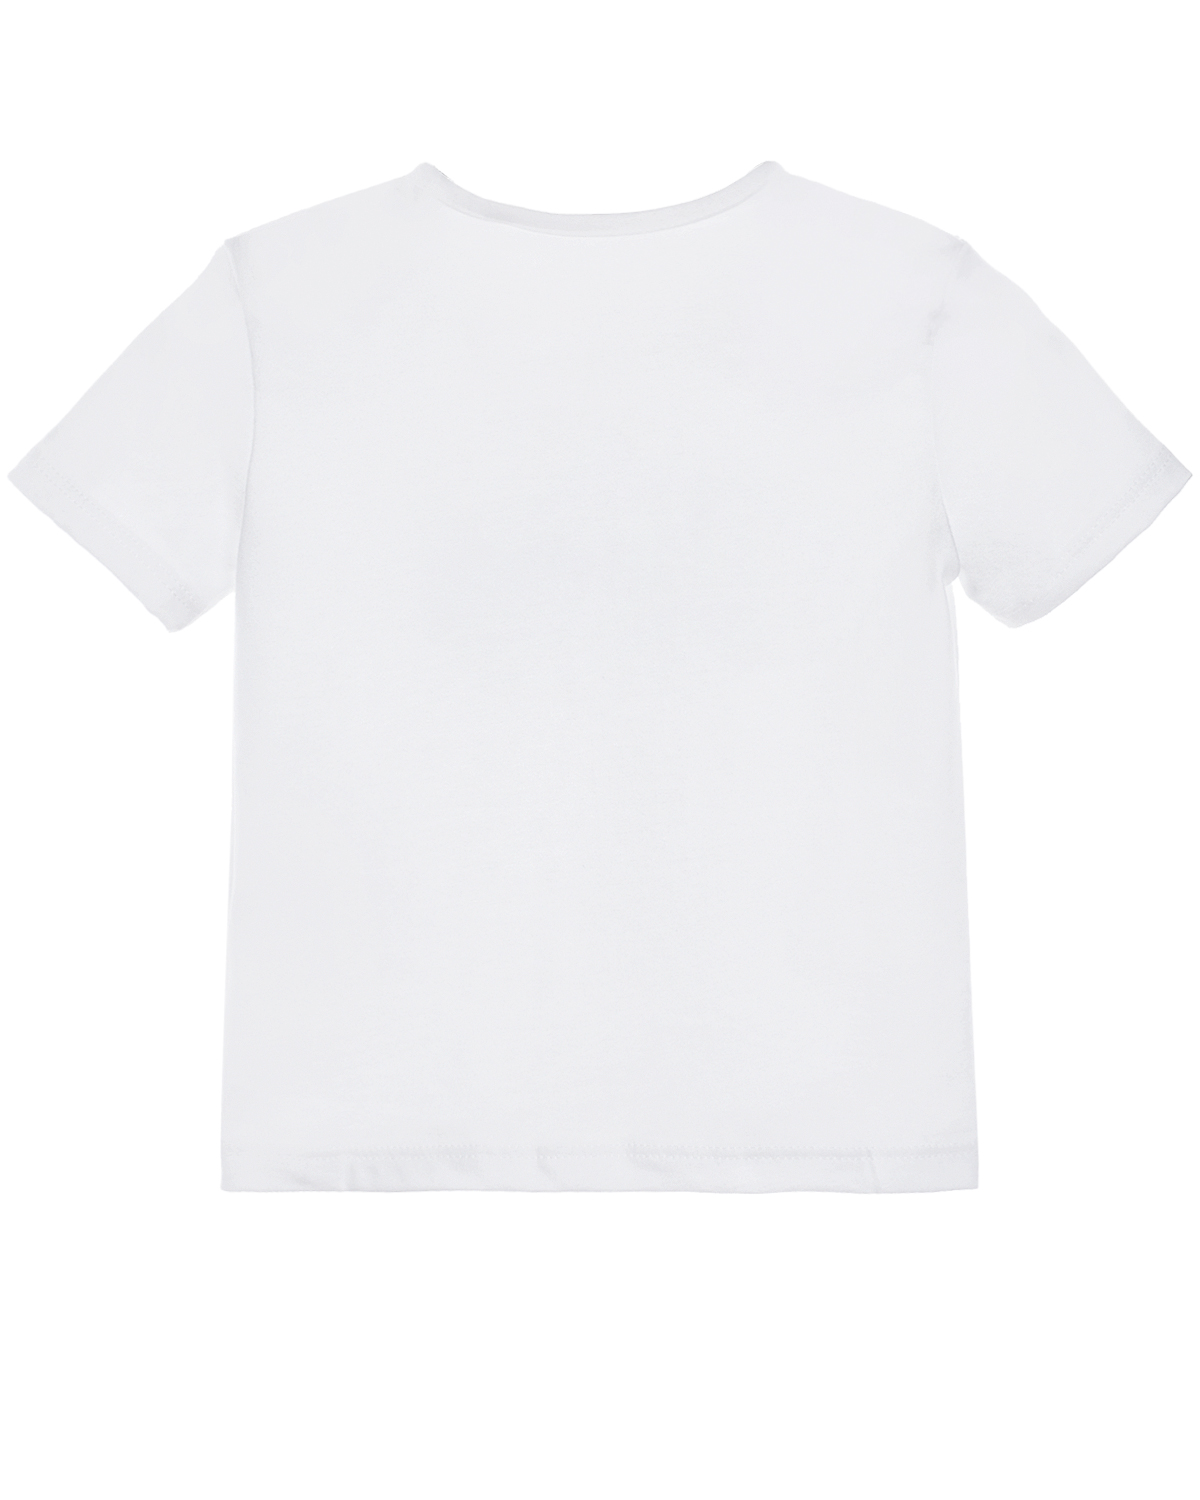 Белая футболка с морским принтом Sanetta fiftyseven детская, размер 68, цвет белый - фото 2